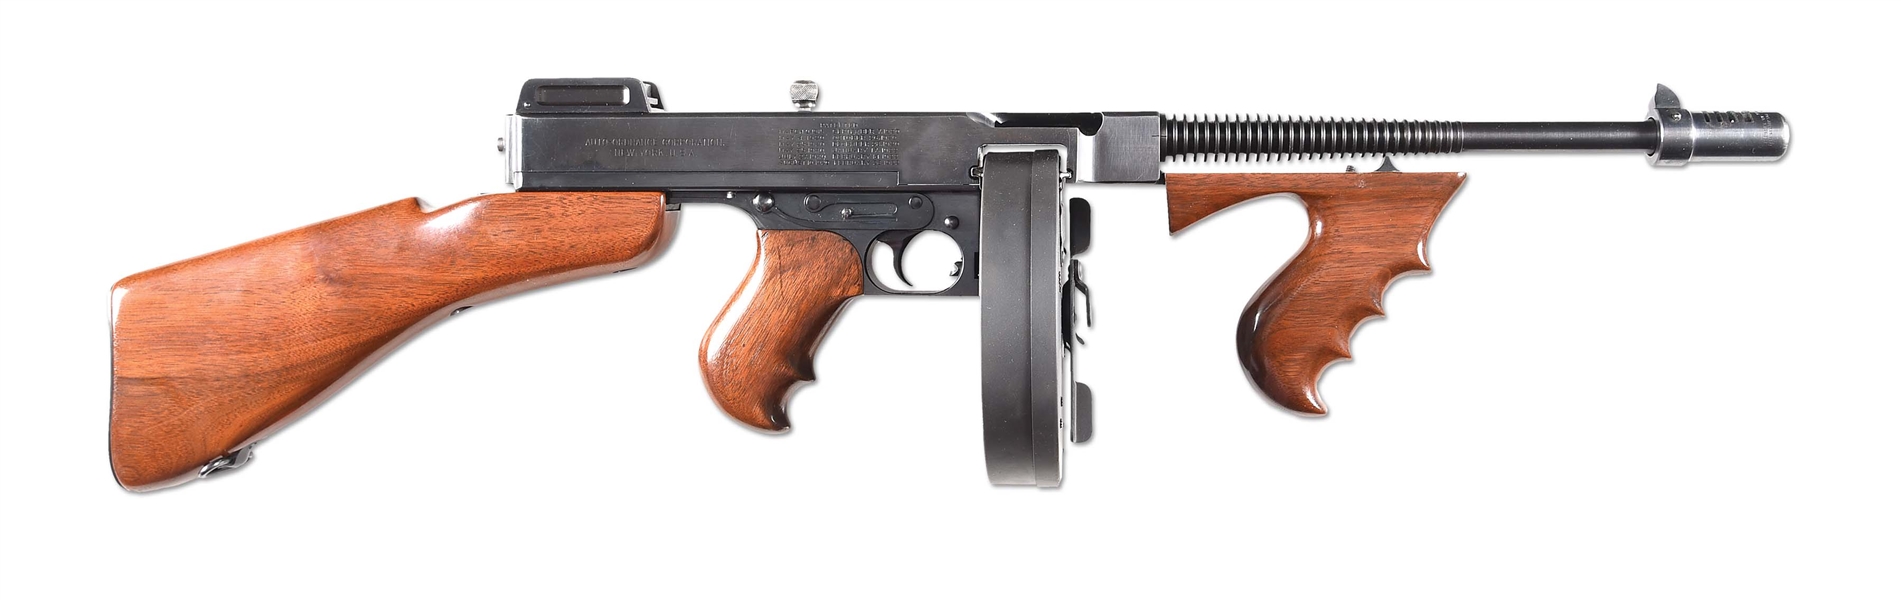 (N) EXCEPTIONALLY HANDSOME COLT THOMPSON 1921/28 NAVY MACHINE GUN (CURIO & RELIC).